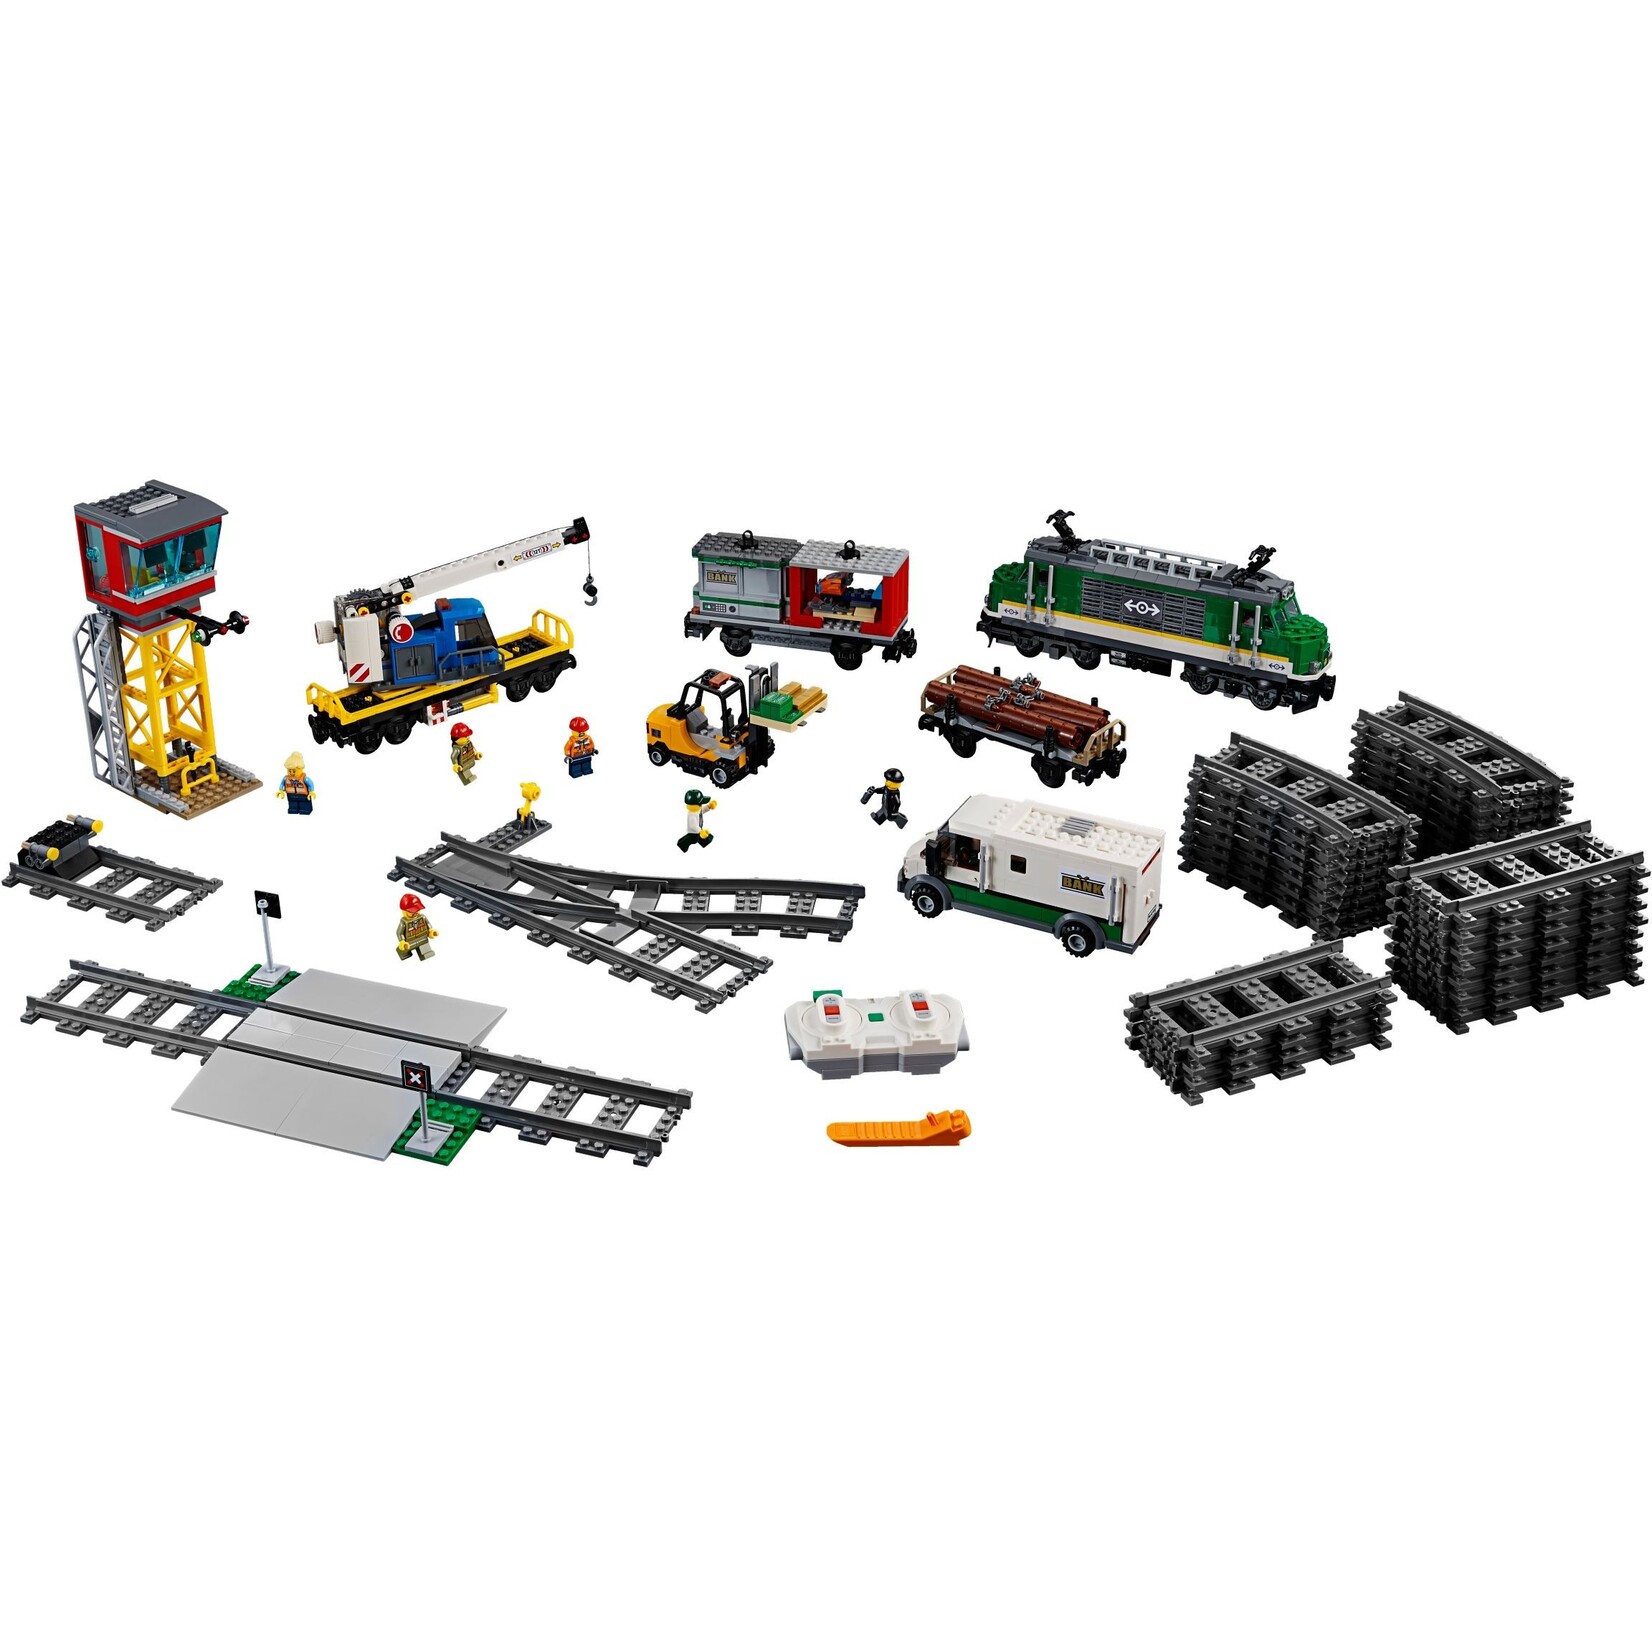 LEGO Vrachttrein - 60198